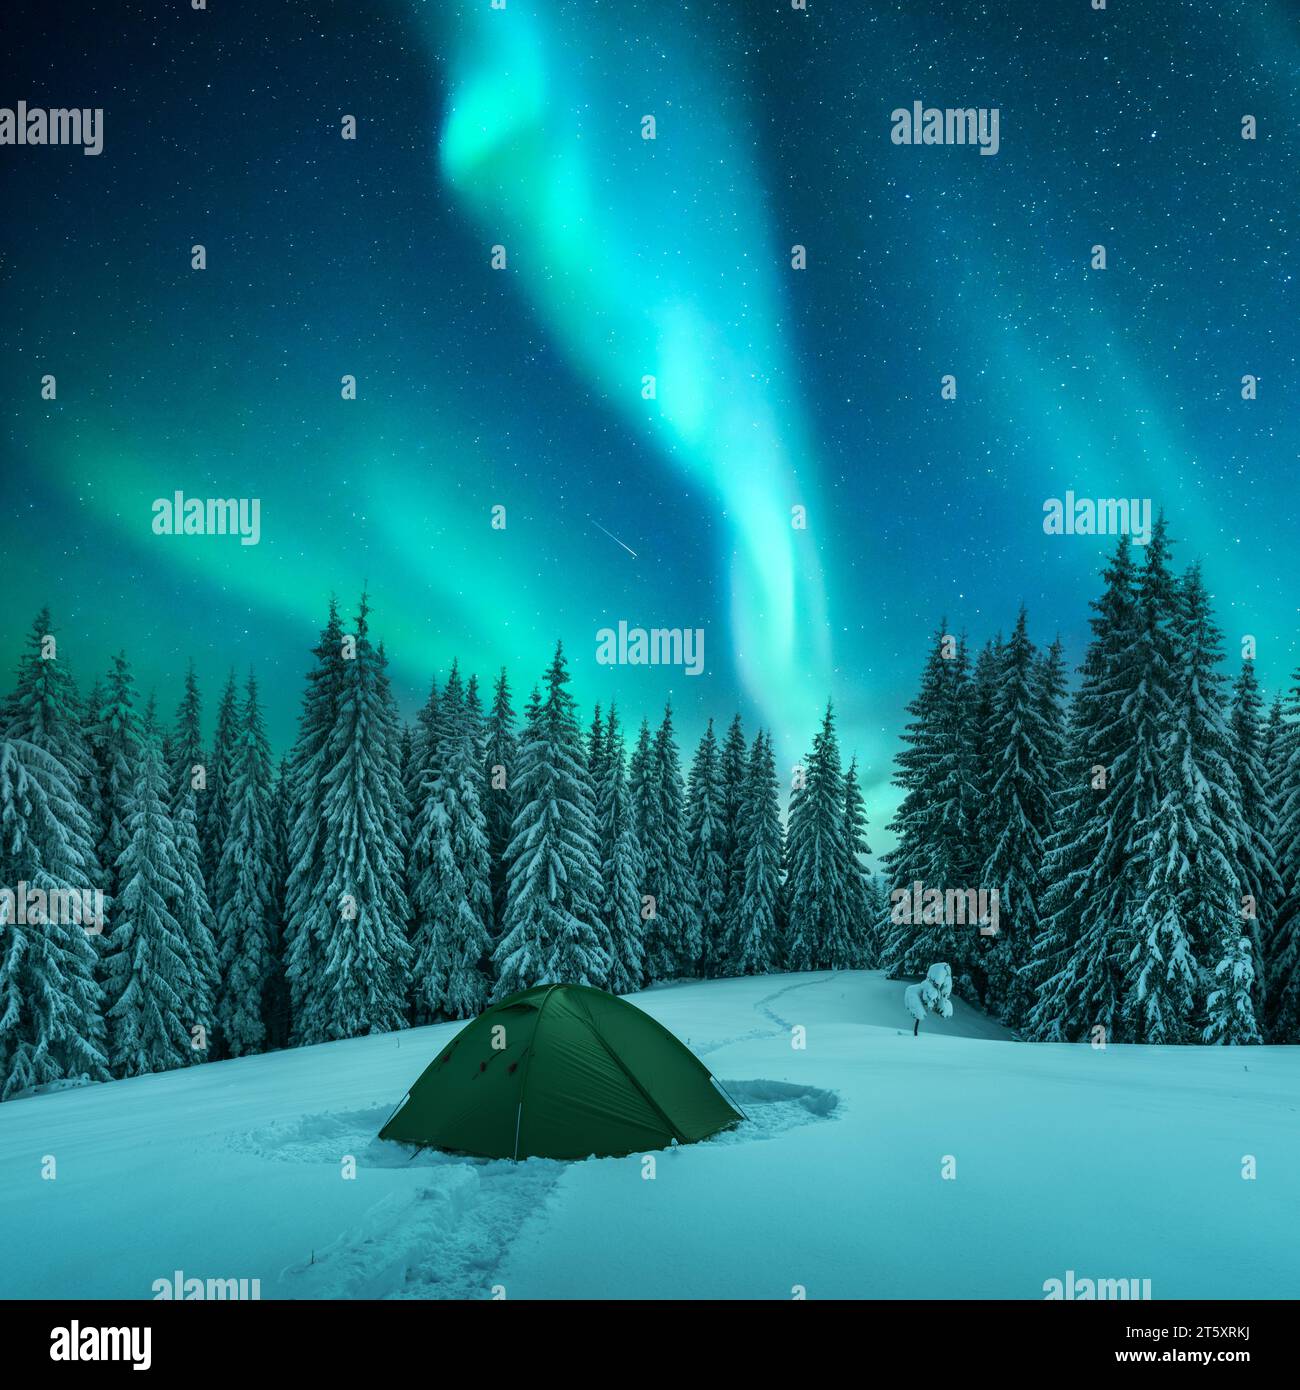 Tenda verde e abeti innevati in una radura invernale tra le montagne sullo sfondo di un incredibile cielo stellato con l'aurora boreale. L'aurora boreale nel cielo notturno Foto Stock